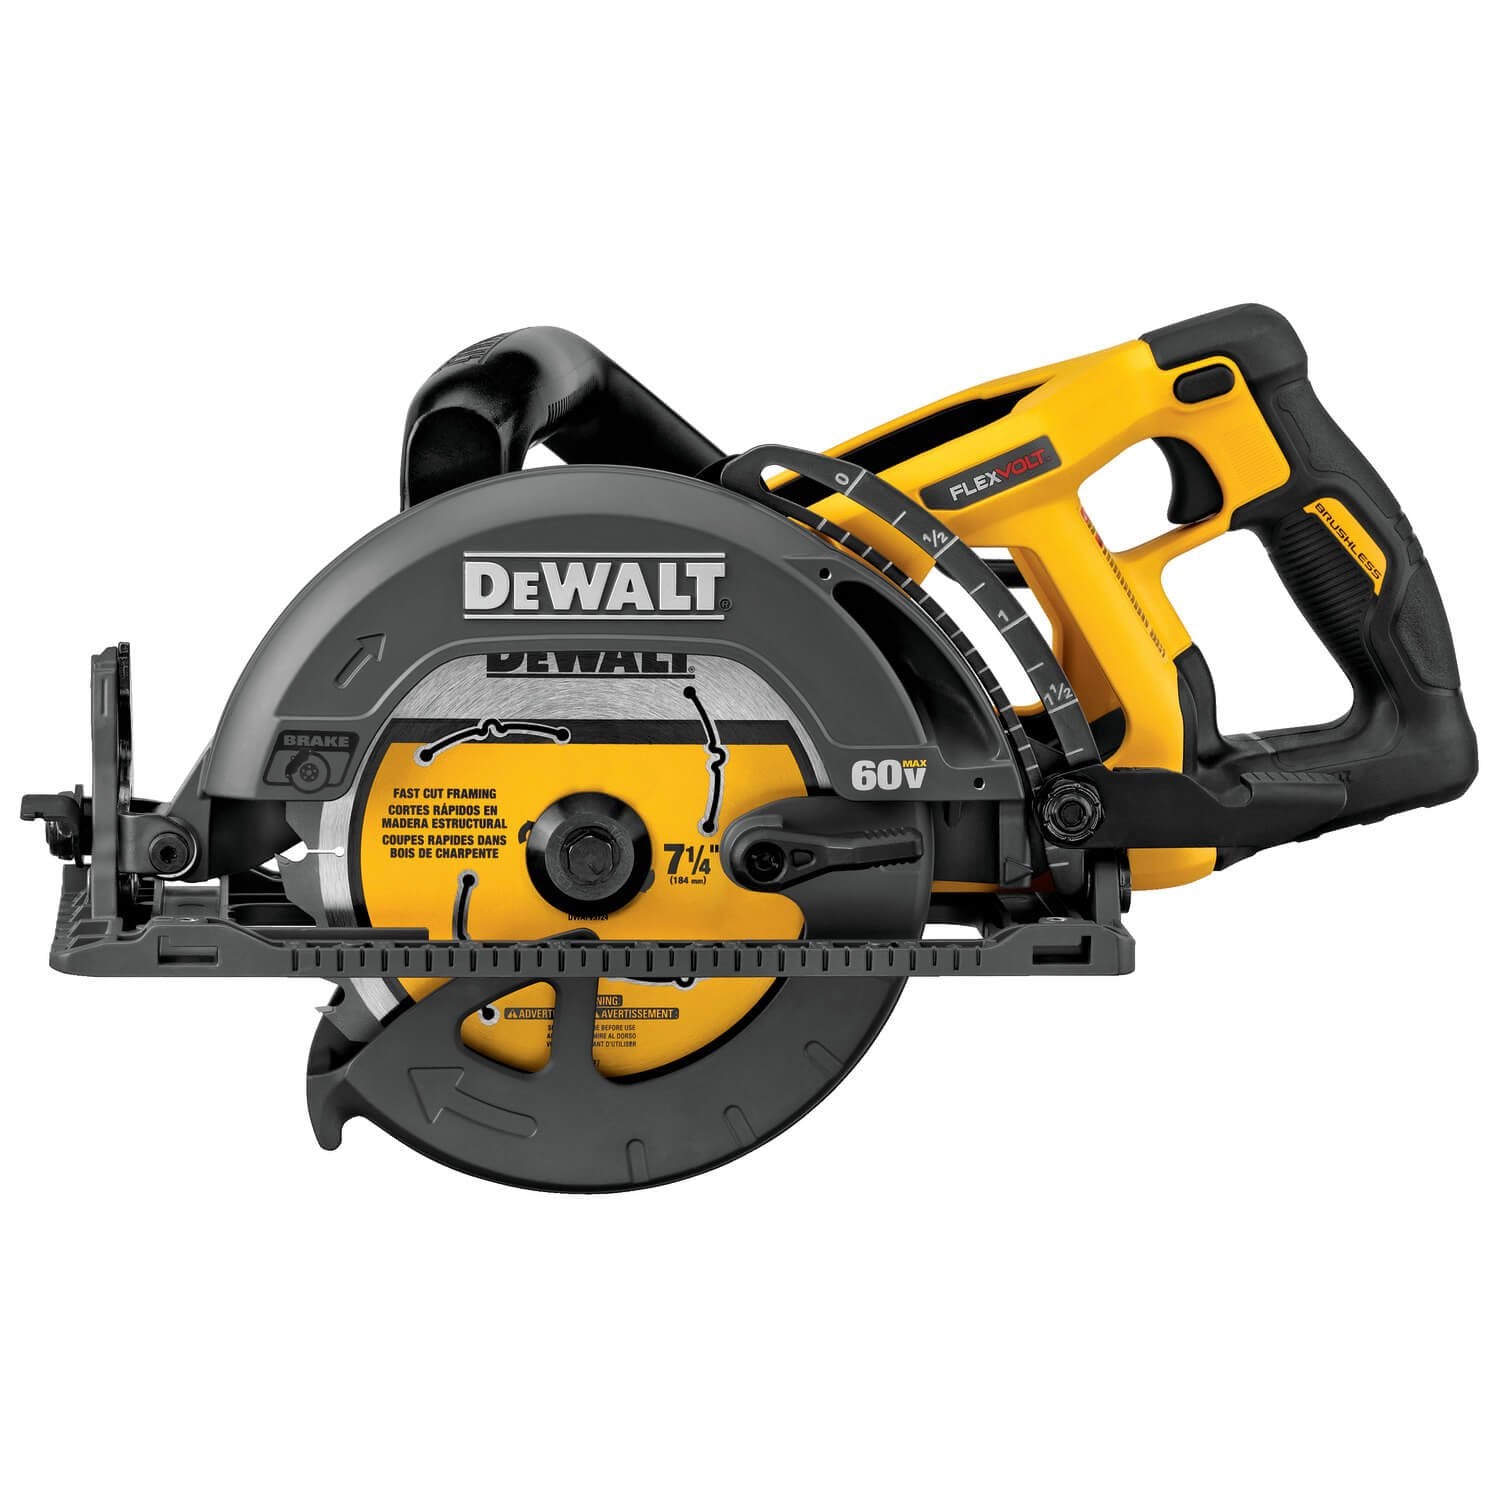 Dewalt DCS577B - FLEXVOLT 7-1/4" Framer Circular Saw- Worm Drive Style